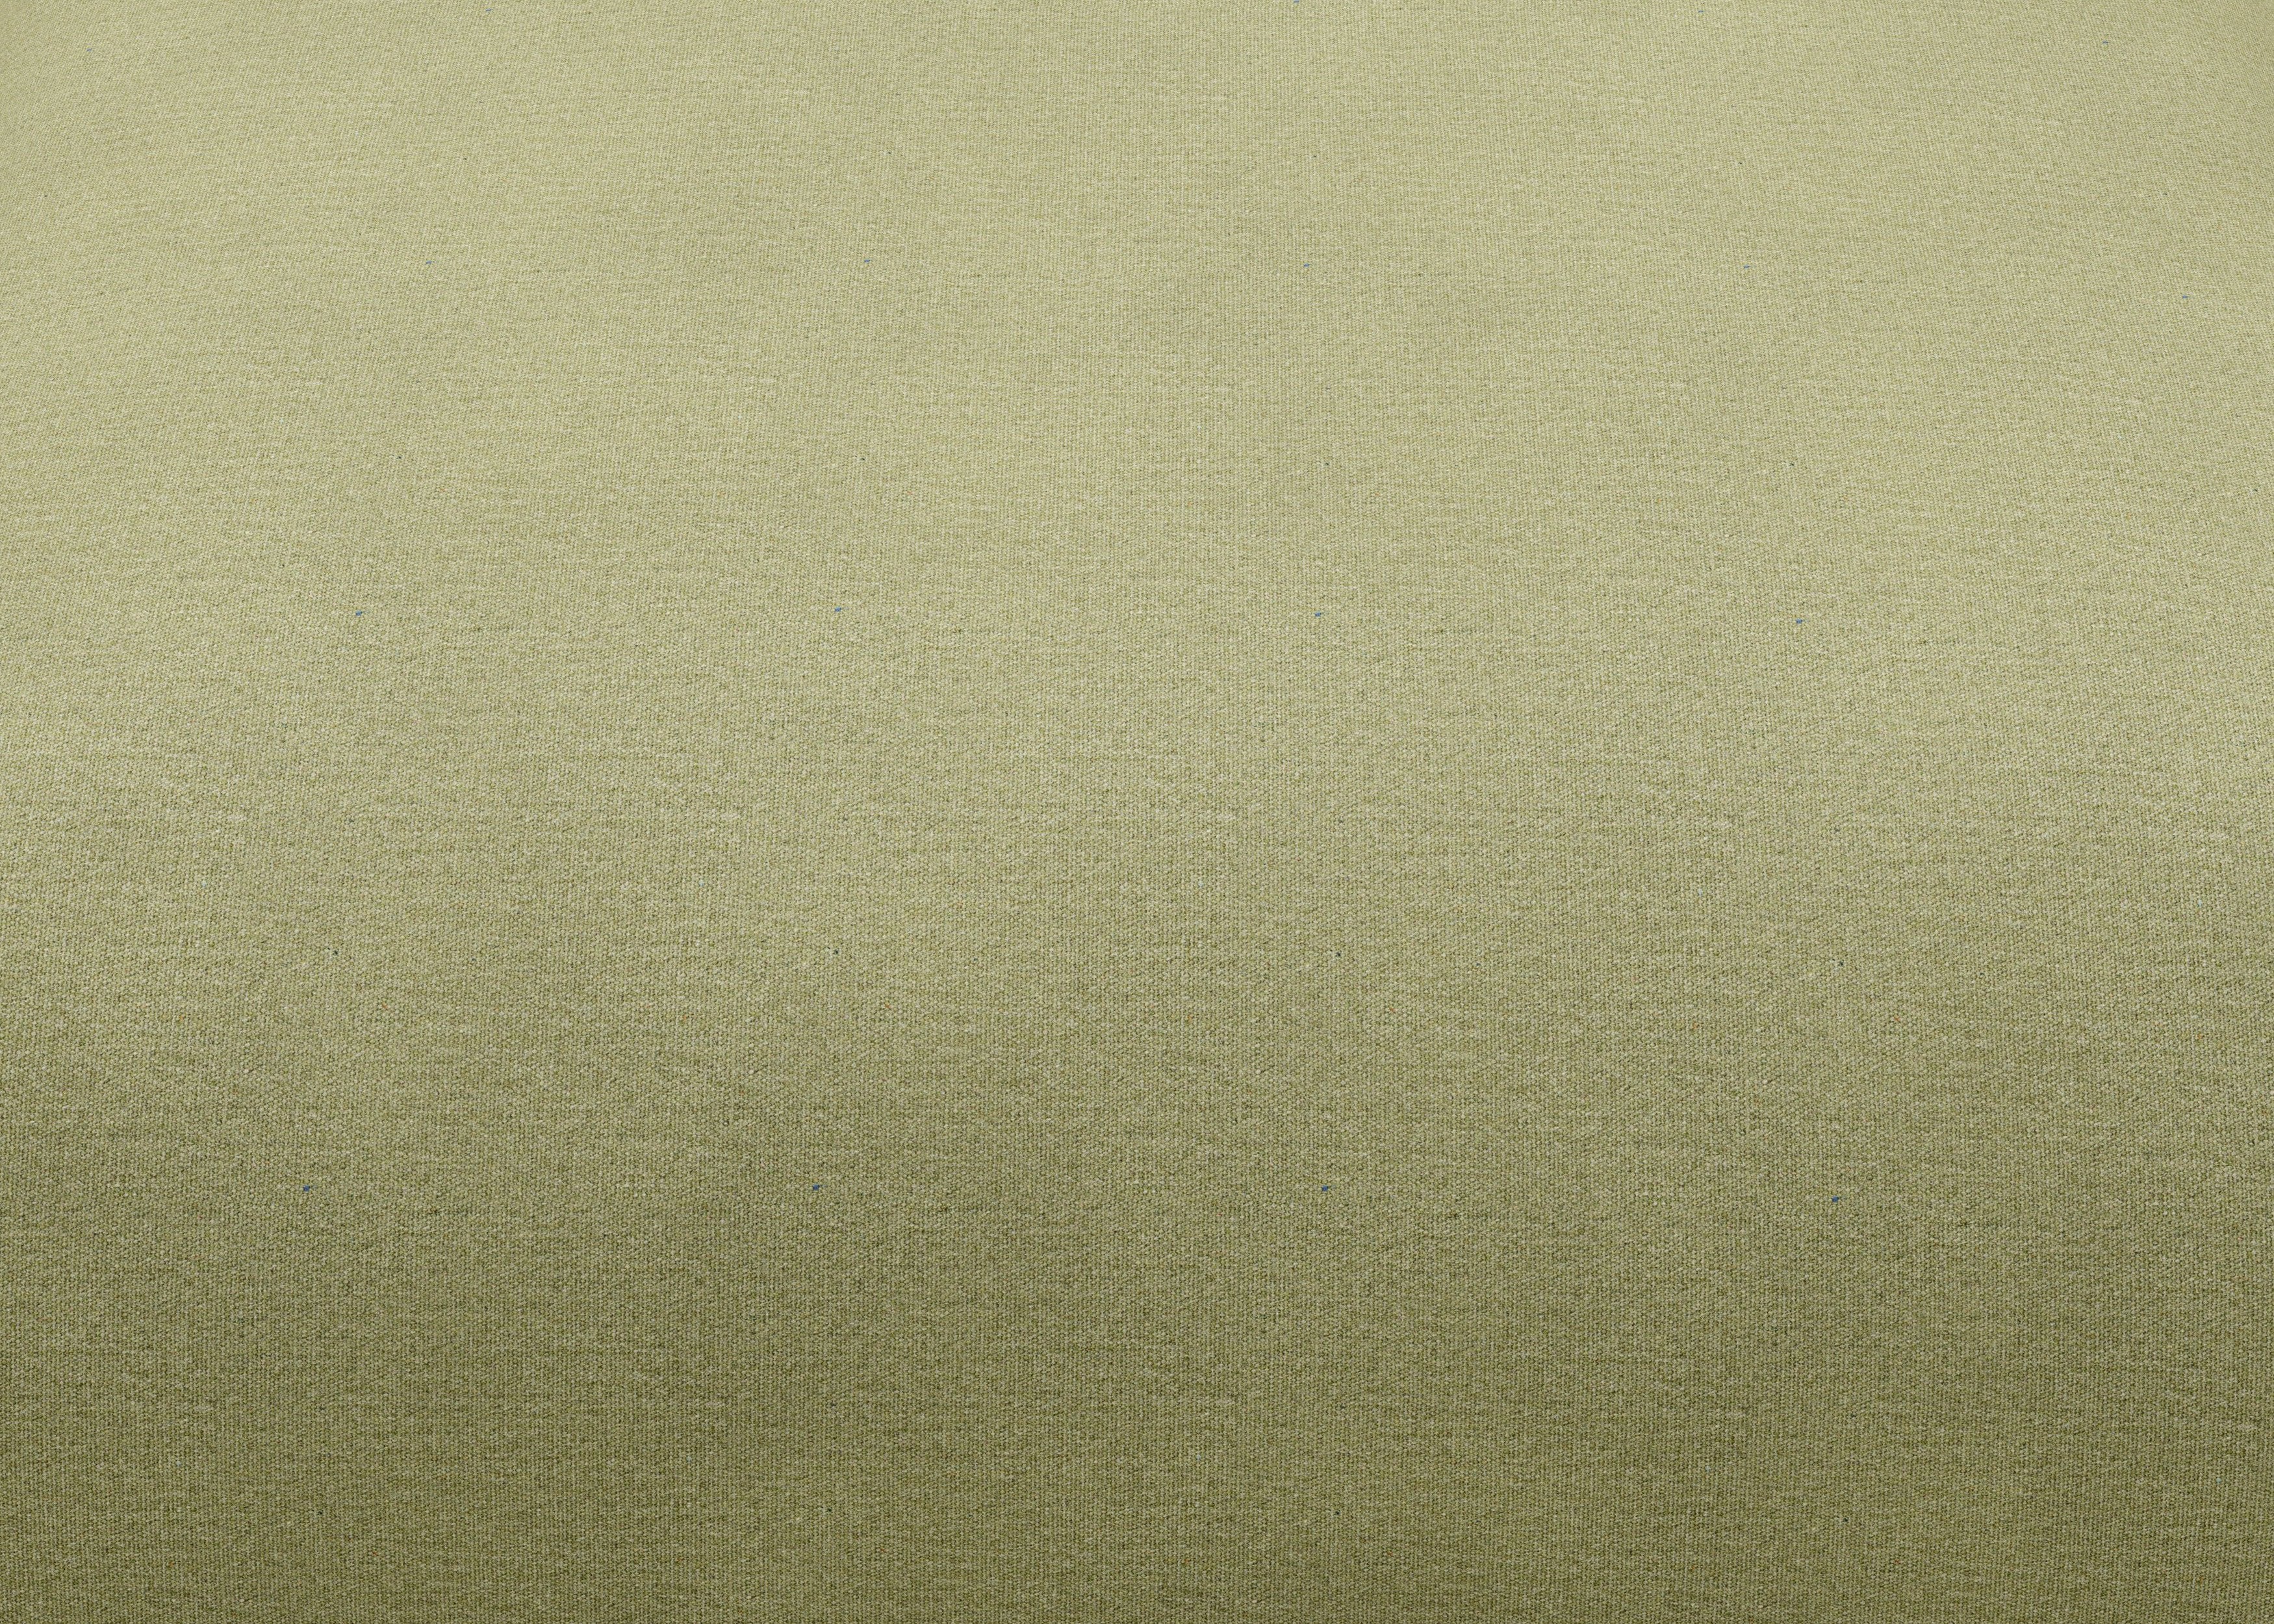 vetsak®-Sofa Daybed L Linen olive